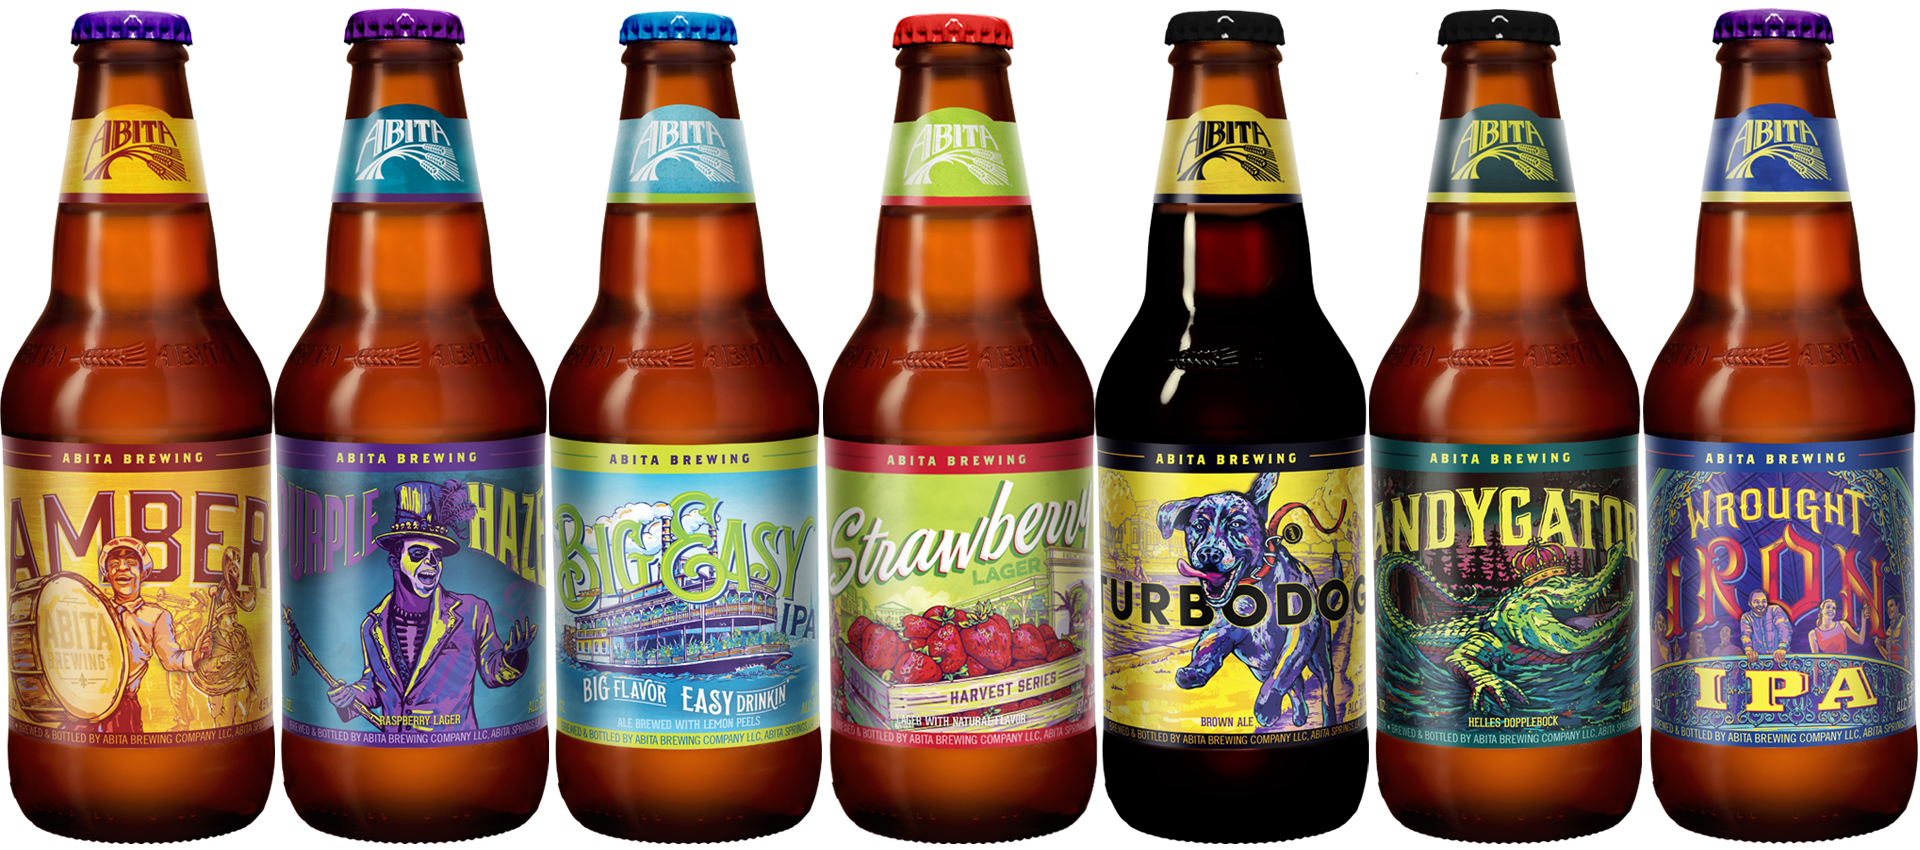 Abita Beer Bottle Lineup Image